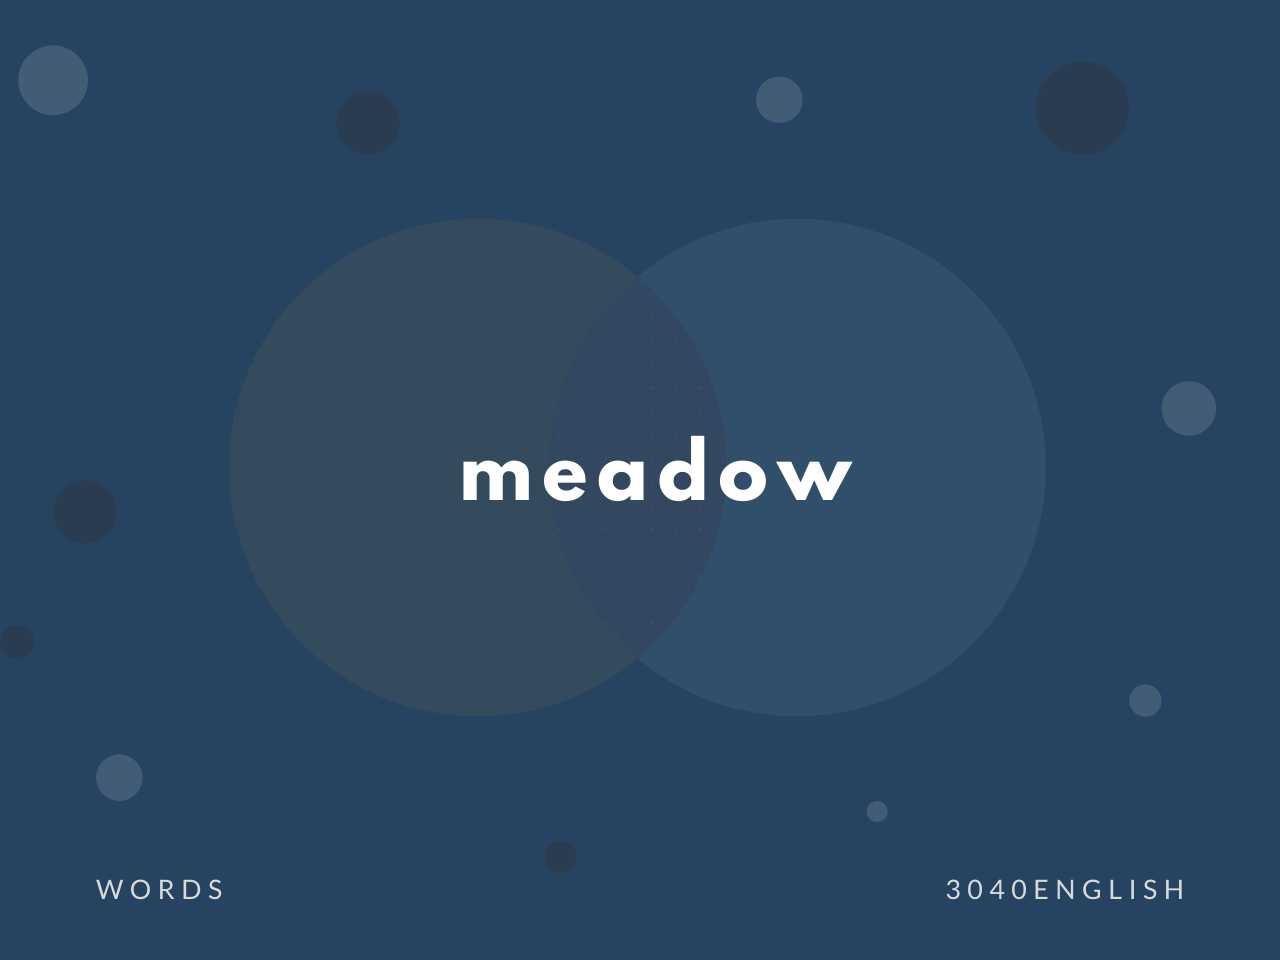 Meadow の意味と簡単な使い方 音読用例文あり 30代40代で身につける英会話